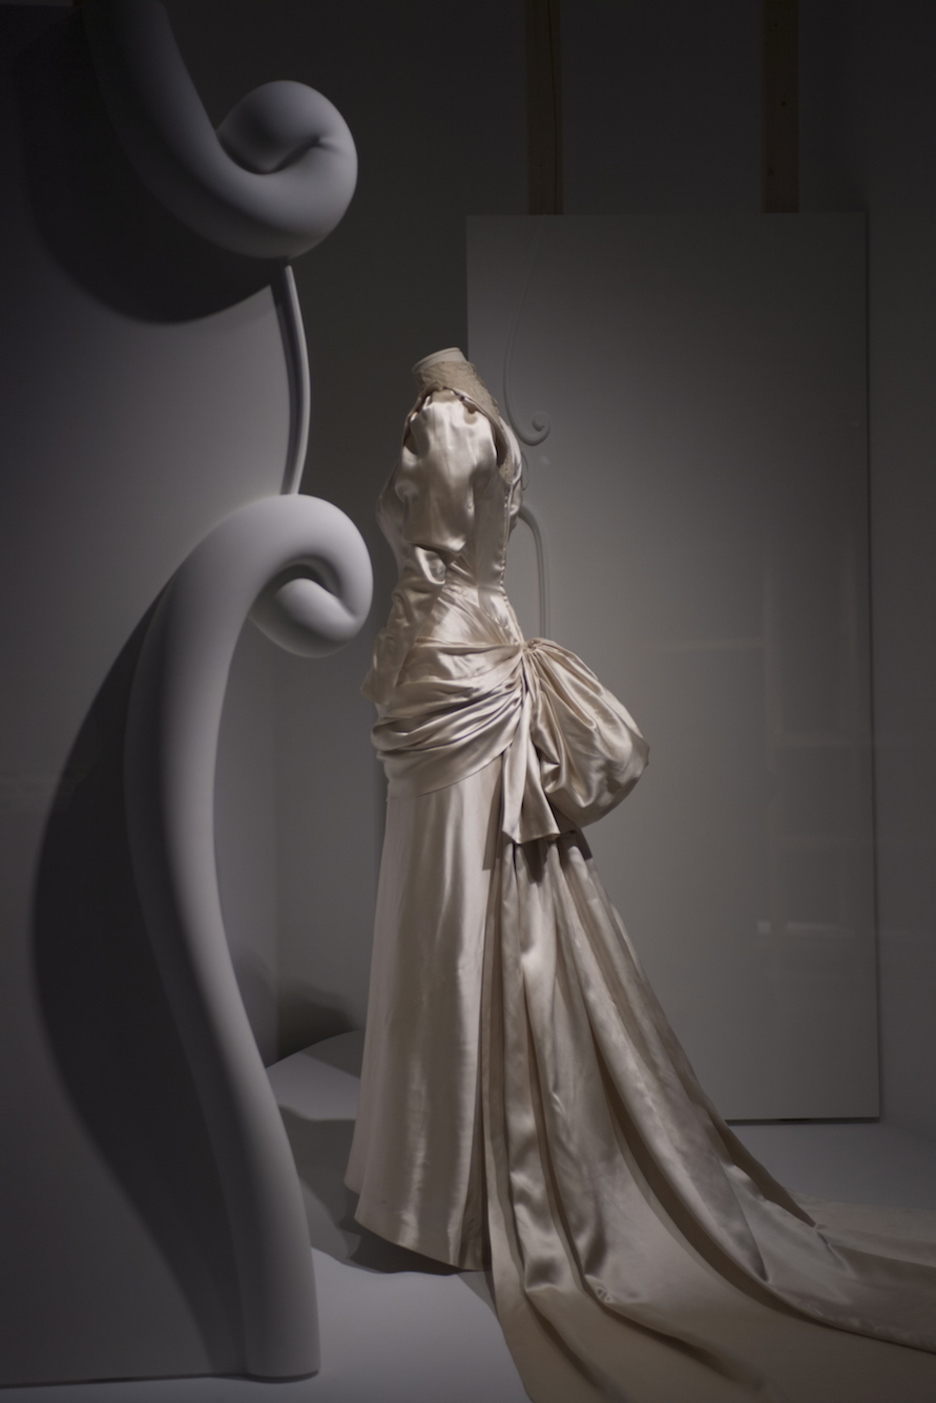 Balenciaga daba mucha importancia a la espalda de la mujer, y muchos de sus diseños atraen la atención en ese punto. (Juan Carlos RUIZ I FOKU)